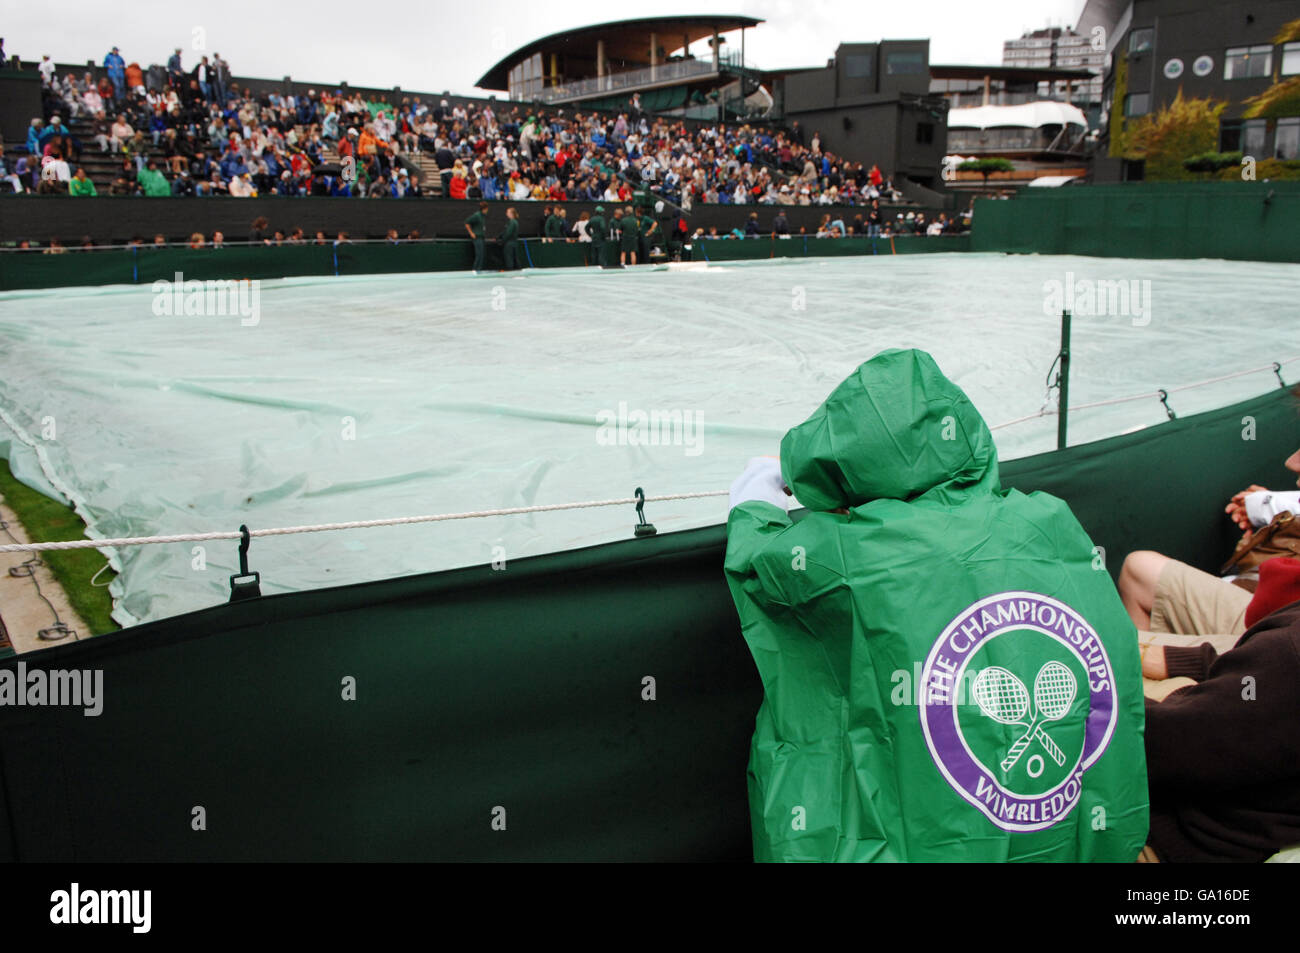 Un fan attende che i ritardi della pioggia si svolgano durante il campionato di tennis All England Lawn a Wimbledon. Foto Stock